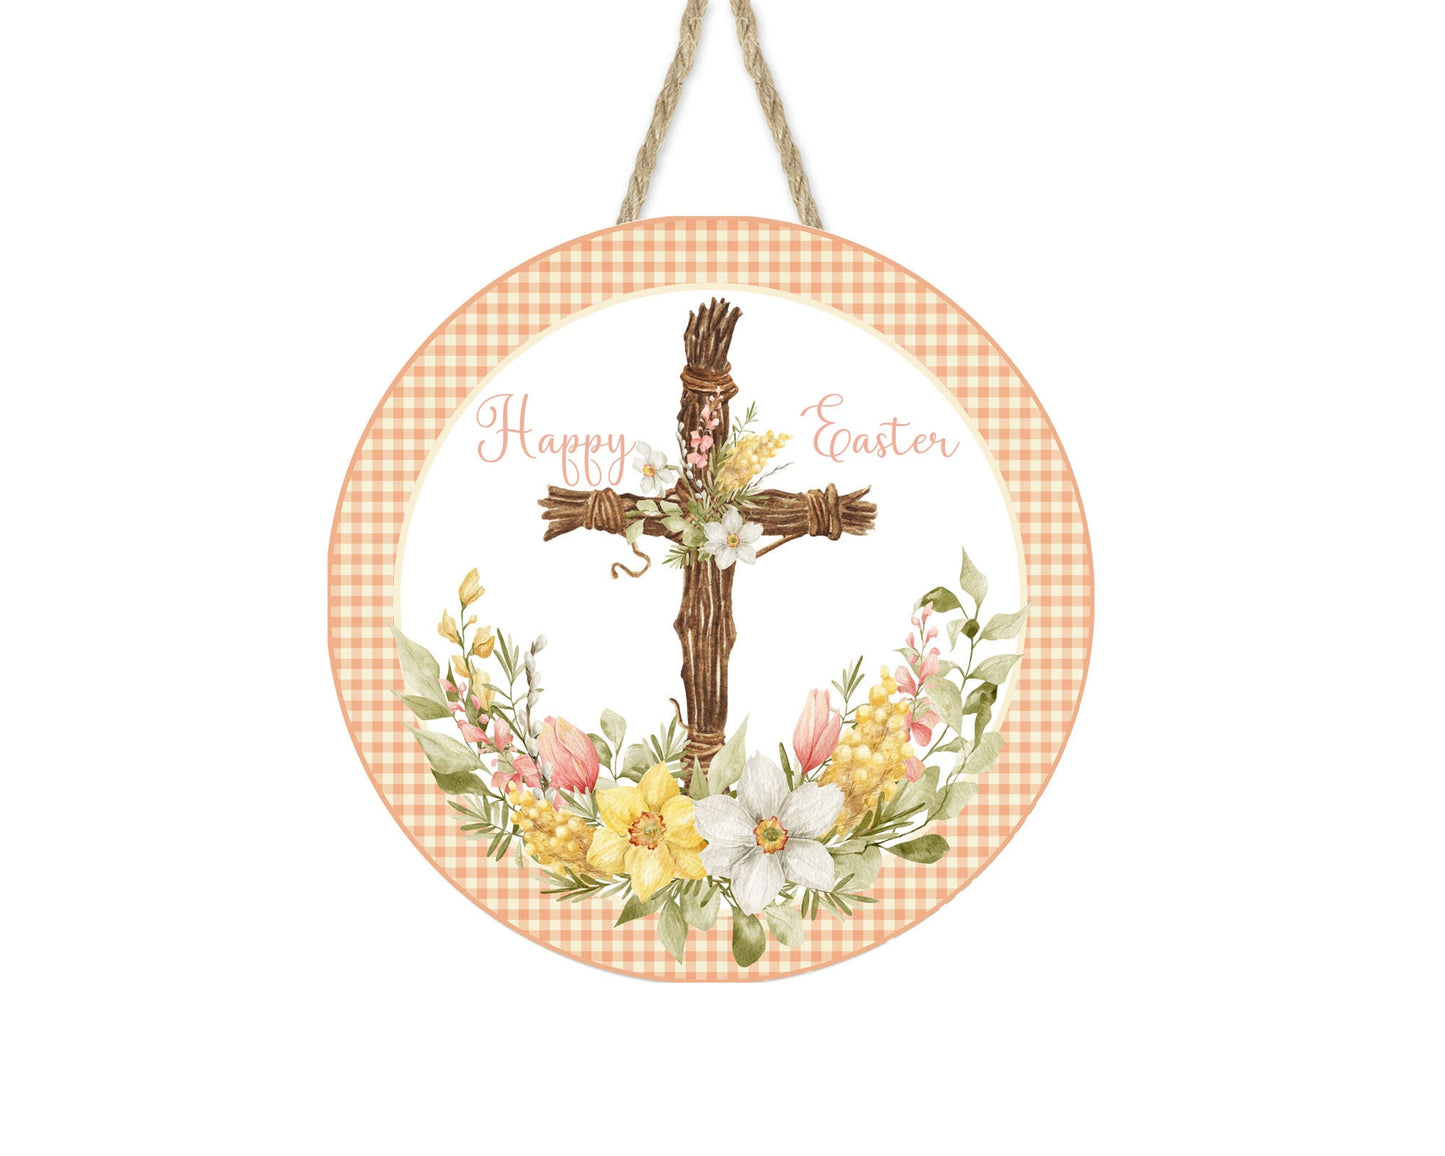 Happy Easter Cross Round Printed Handmade Wood Sign Door Hanger